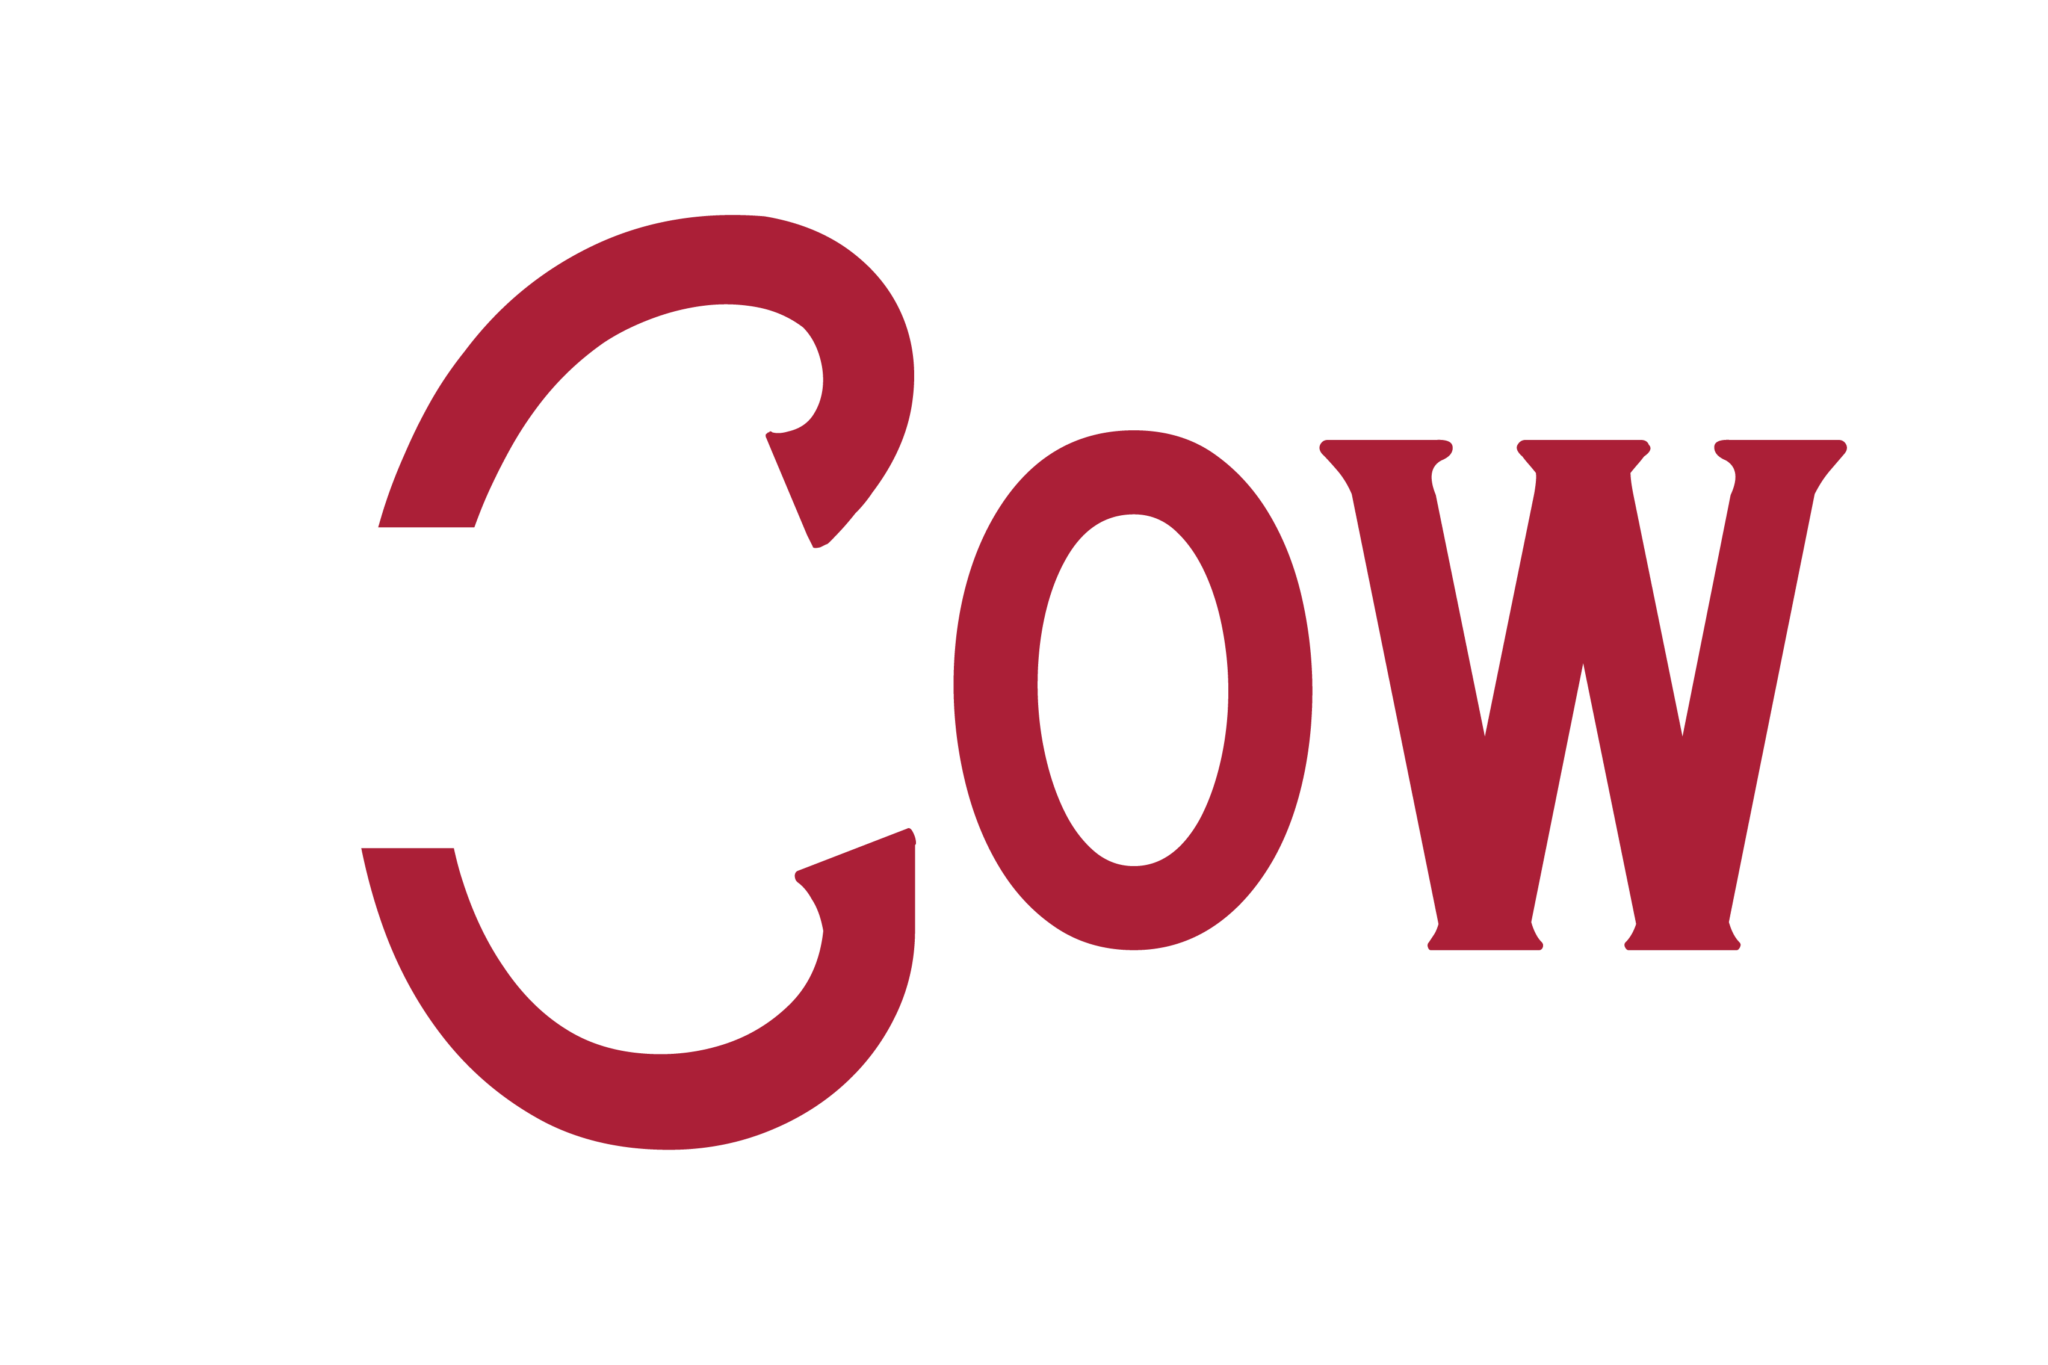 The Cow logo